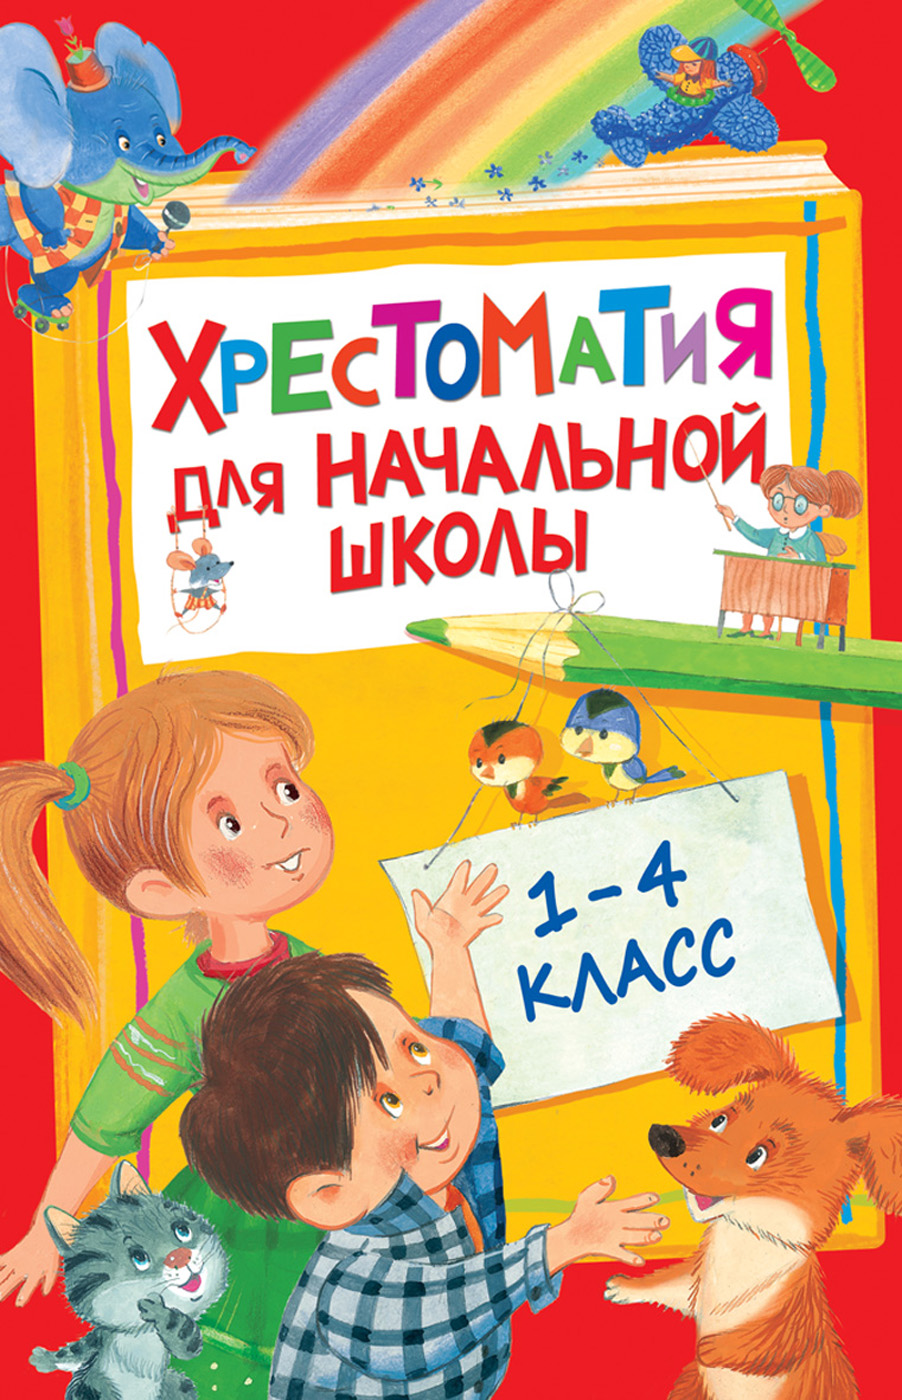 Книга 28524 Хрестоматия для начальной школы 1-4 класс Росмэн - Москва 